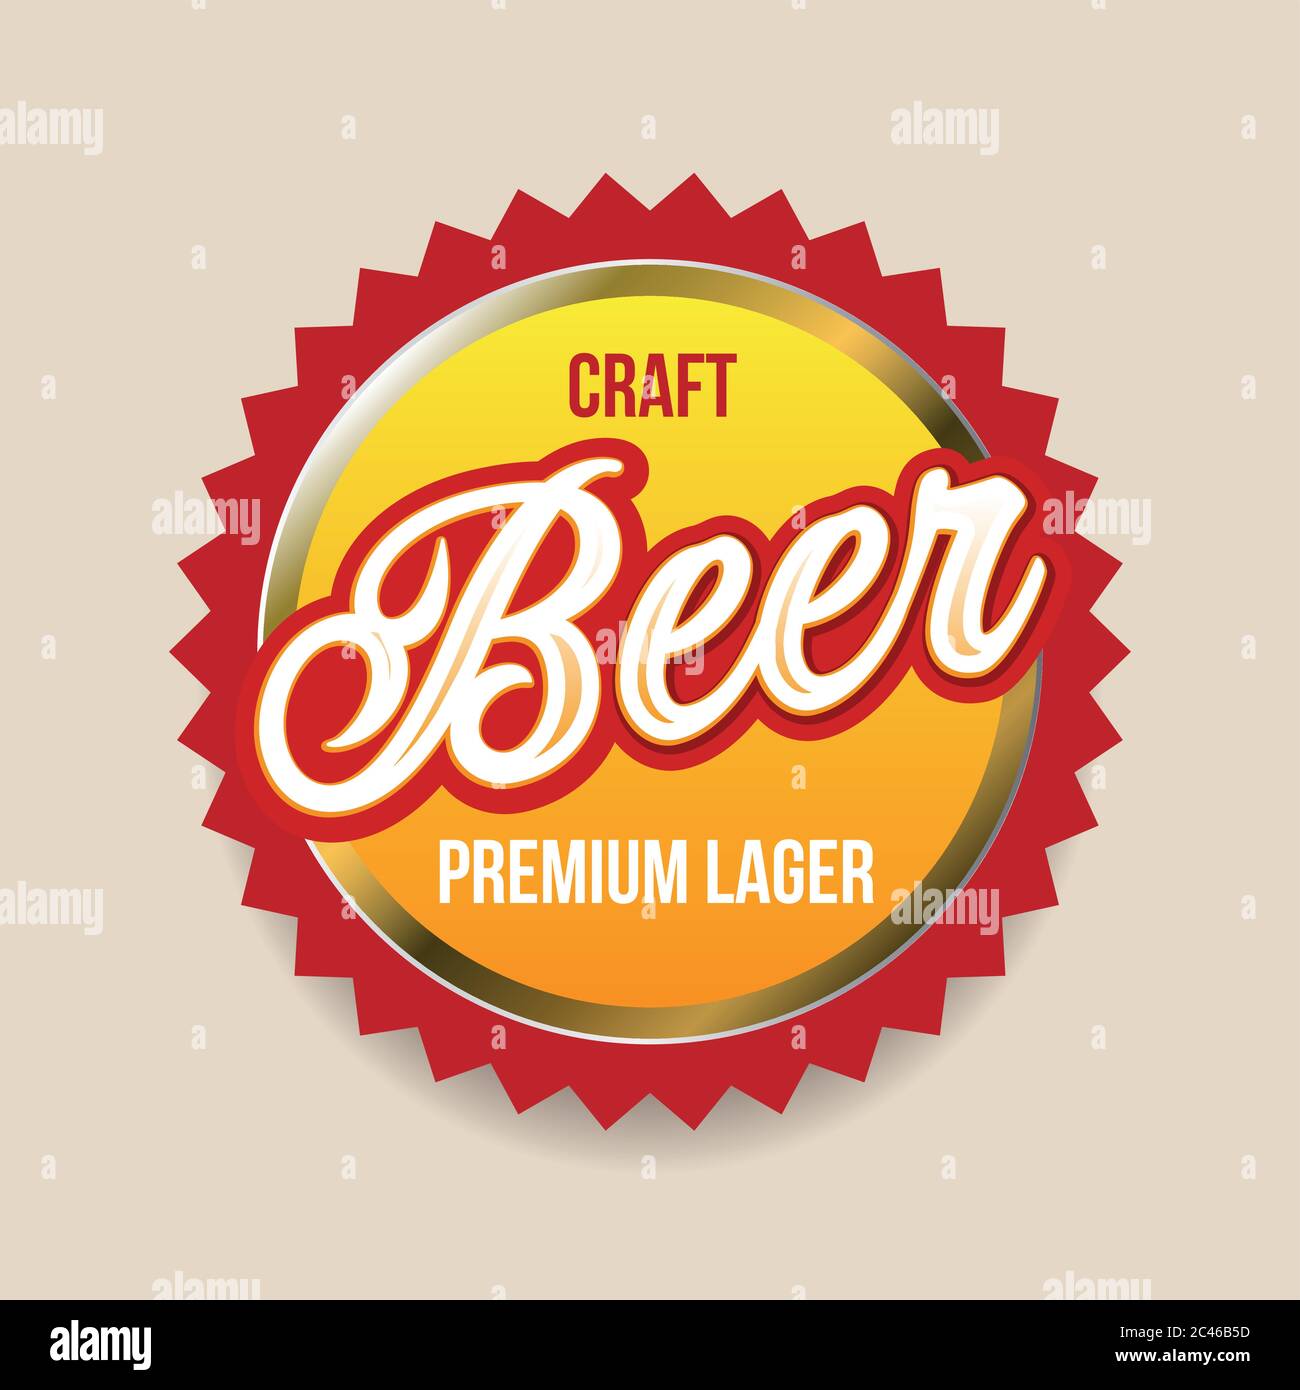 Craft Beer label badge Stock Vector